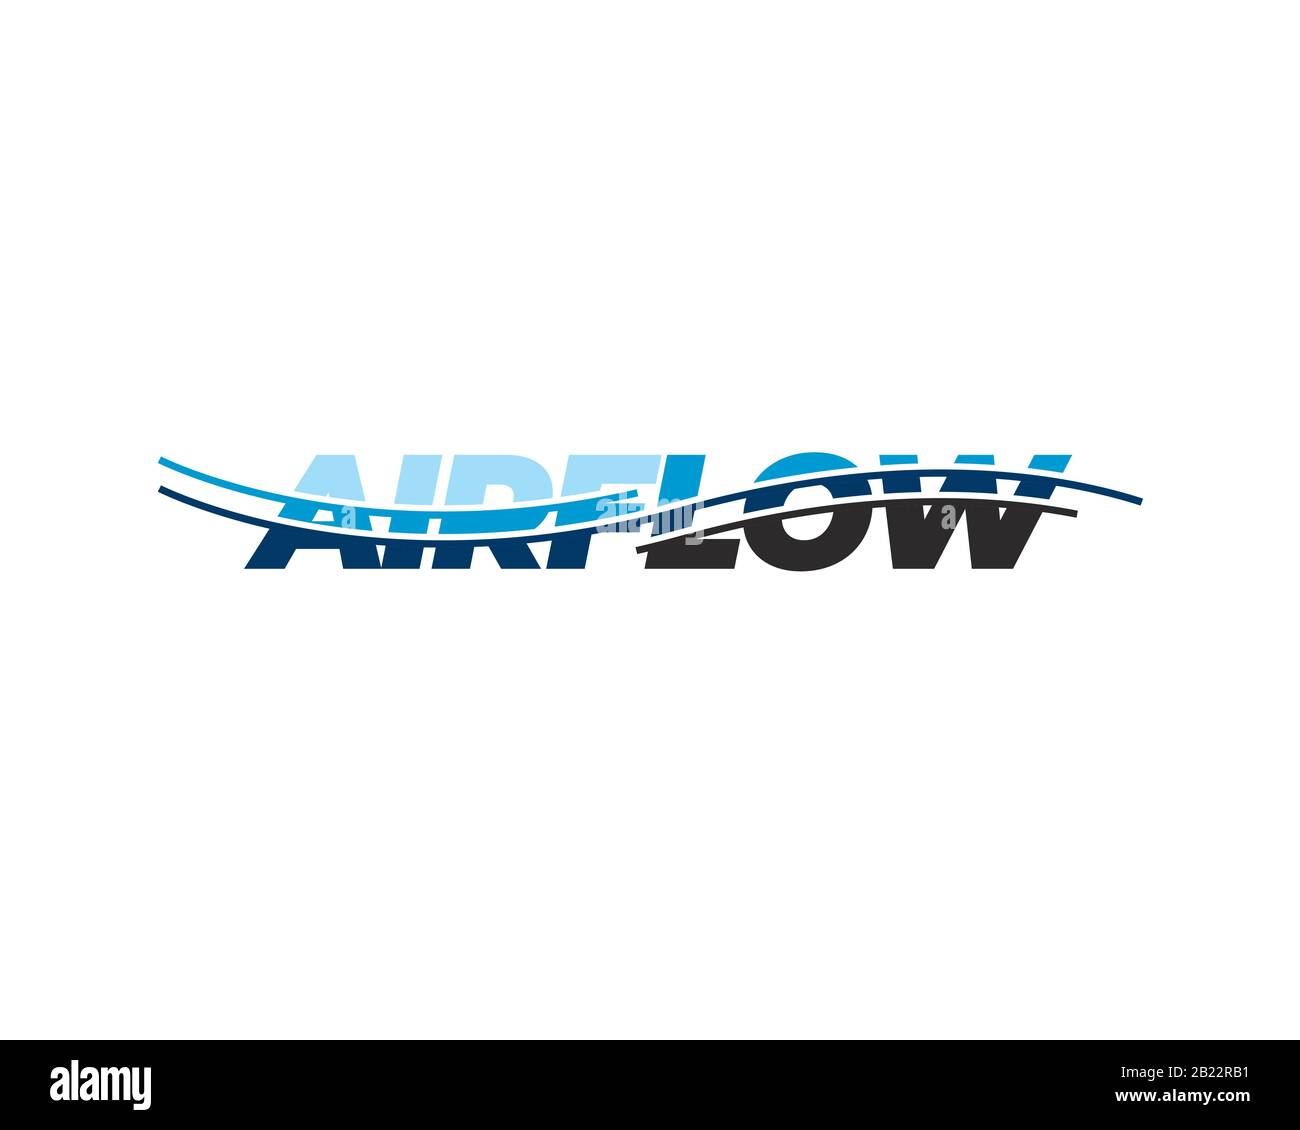 Wortmarke Logo Typografie Luftstrom mit Luftlinien Kurve ähnlich Luft Oder Wasserstrahl Stock Vektor